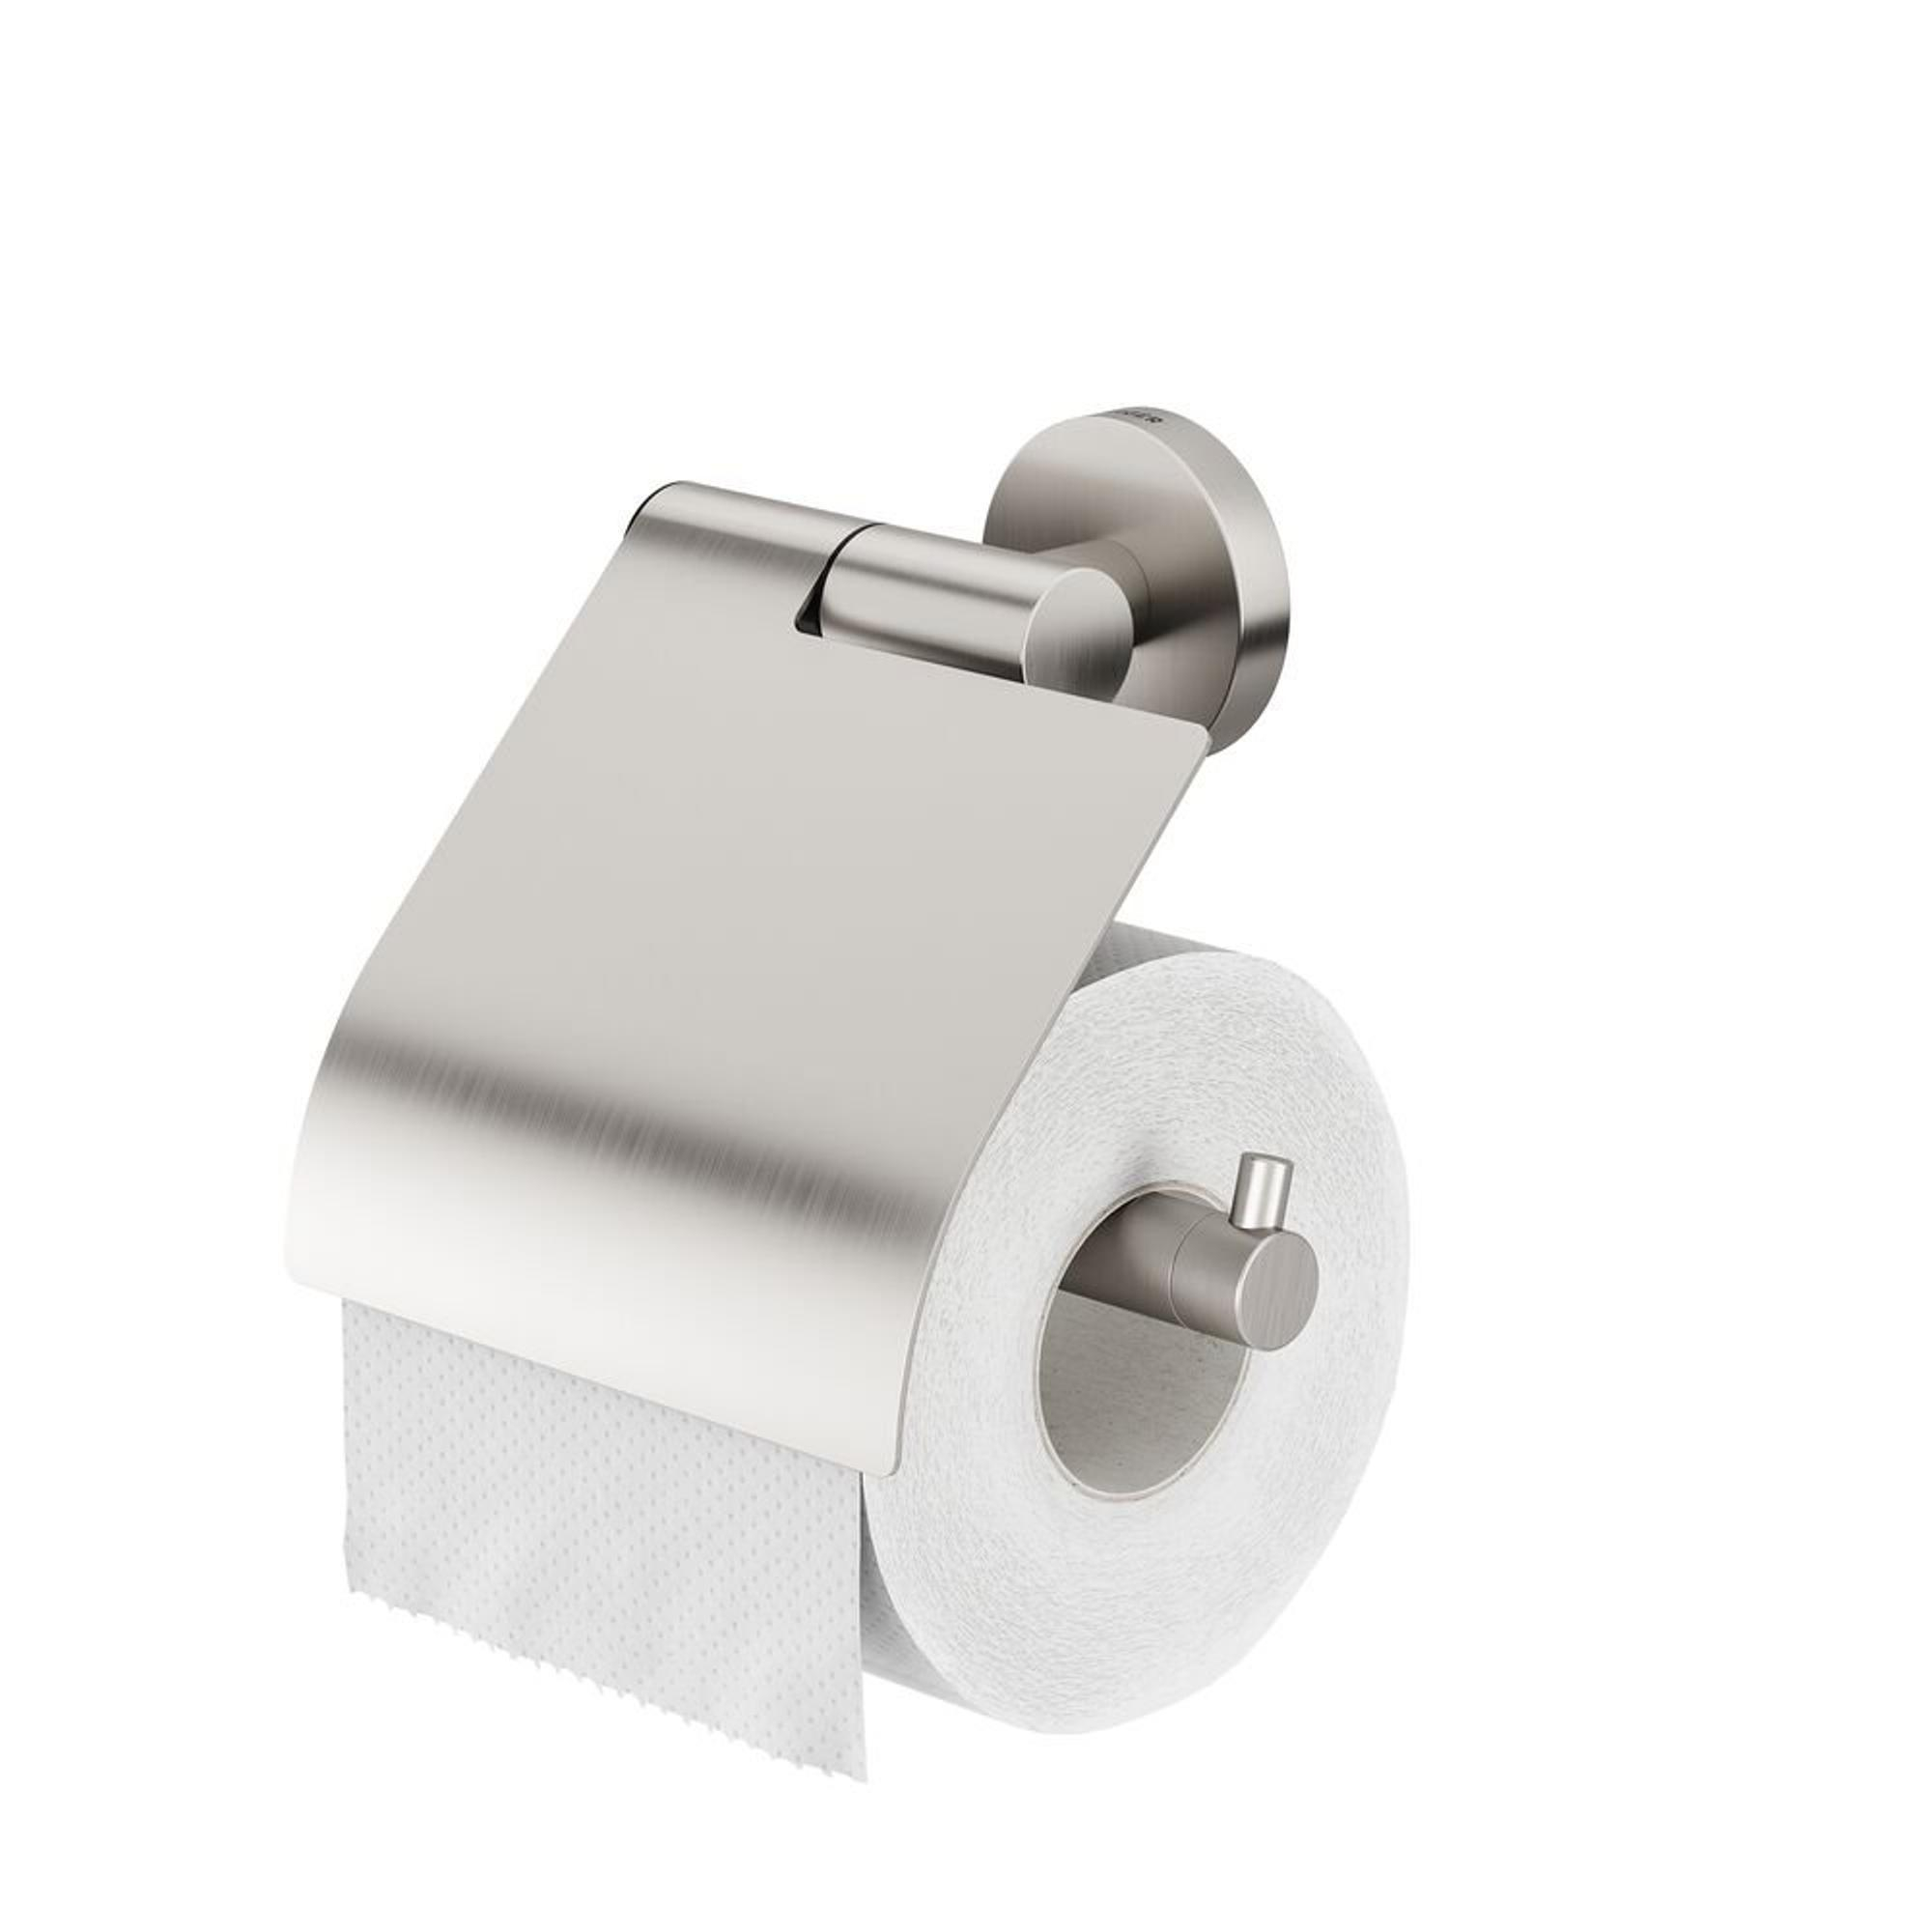 Acheter un porte-rouleau de papier toilette de rechange élégant